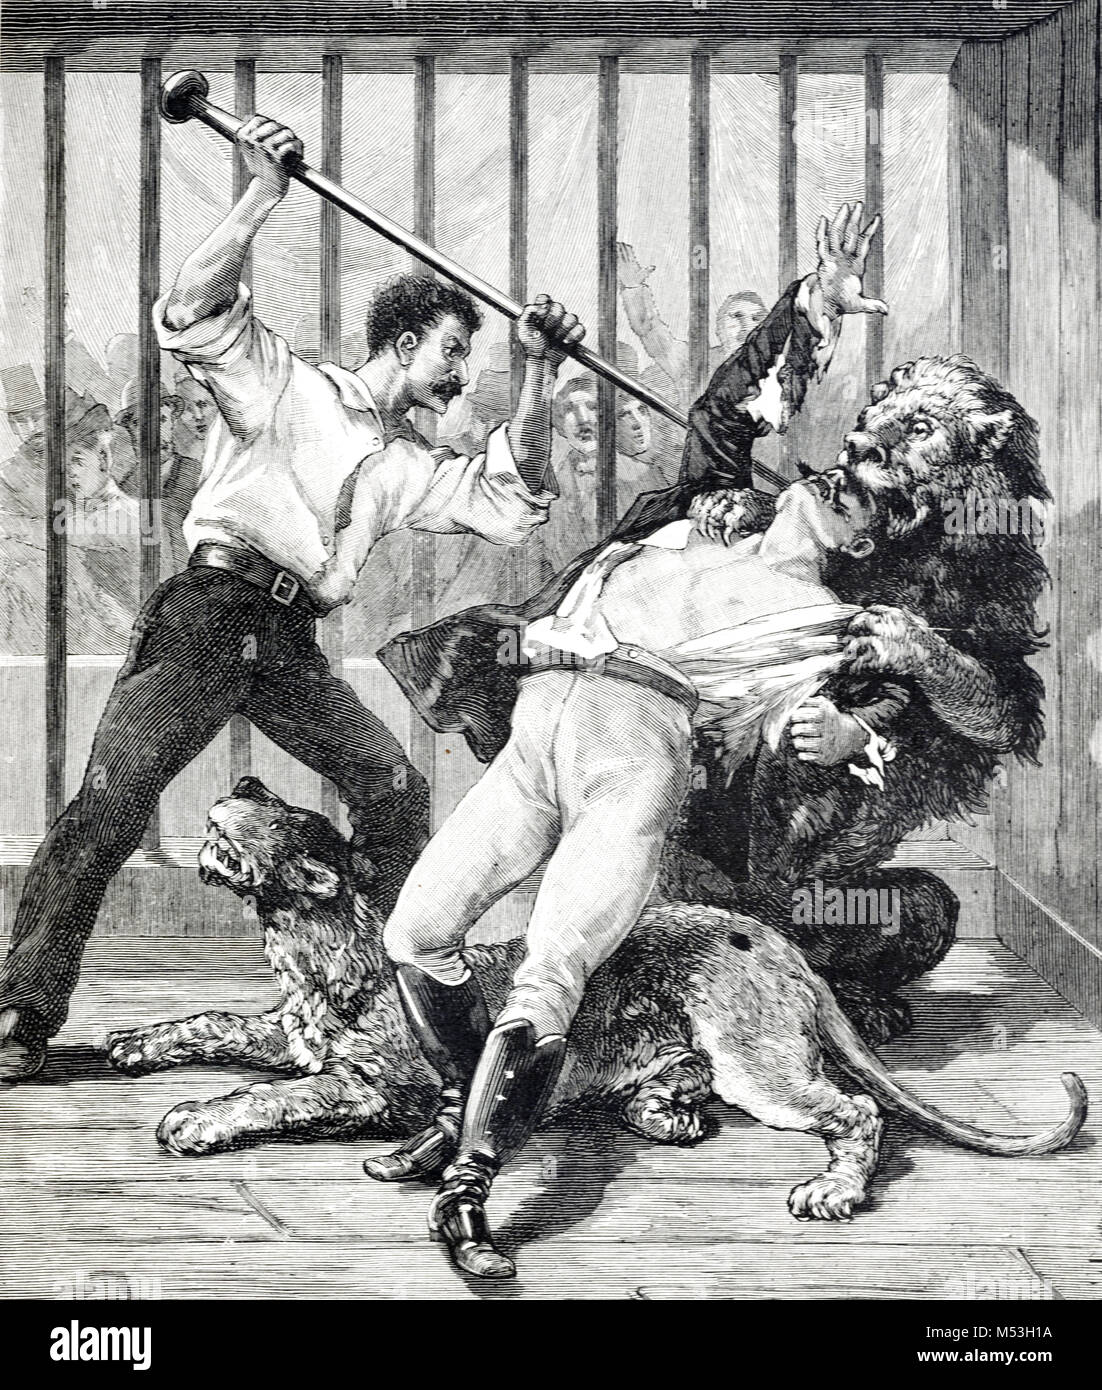 Formateur ou Lion Lion Tamer, M. Lucas, attaqué et tué par Lion dans l'Hippodrome de Paris France (gravure, 1888) Banque D'Images